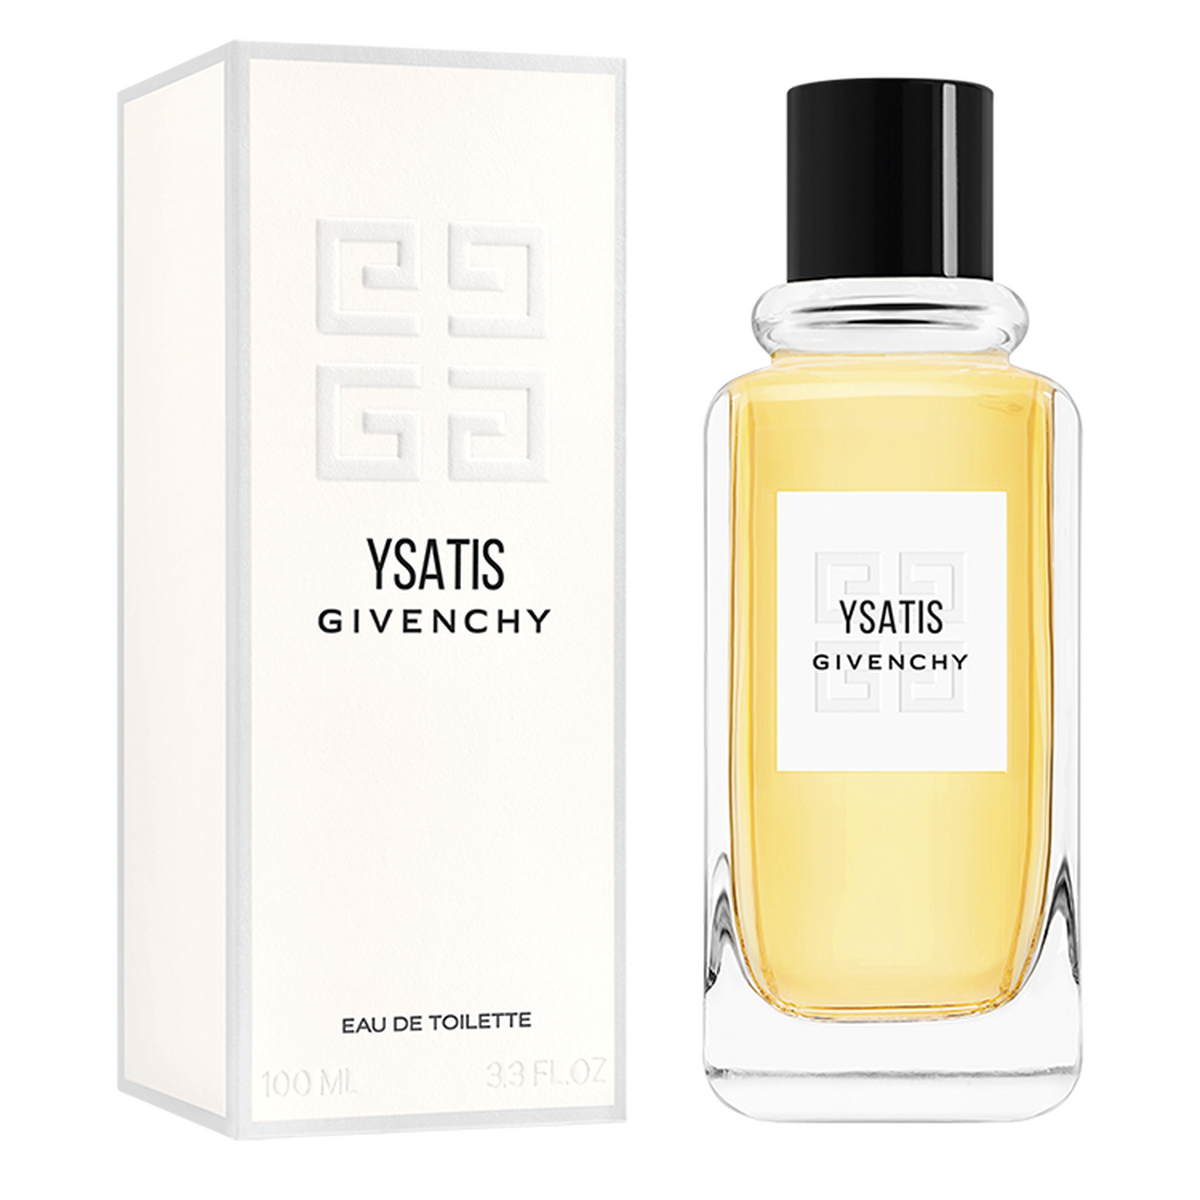 Ysatis Eau de Toilette Spray for Women by Givenchy